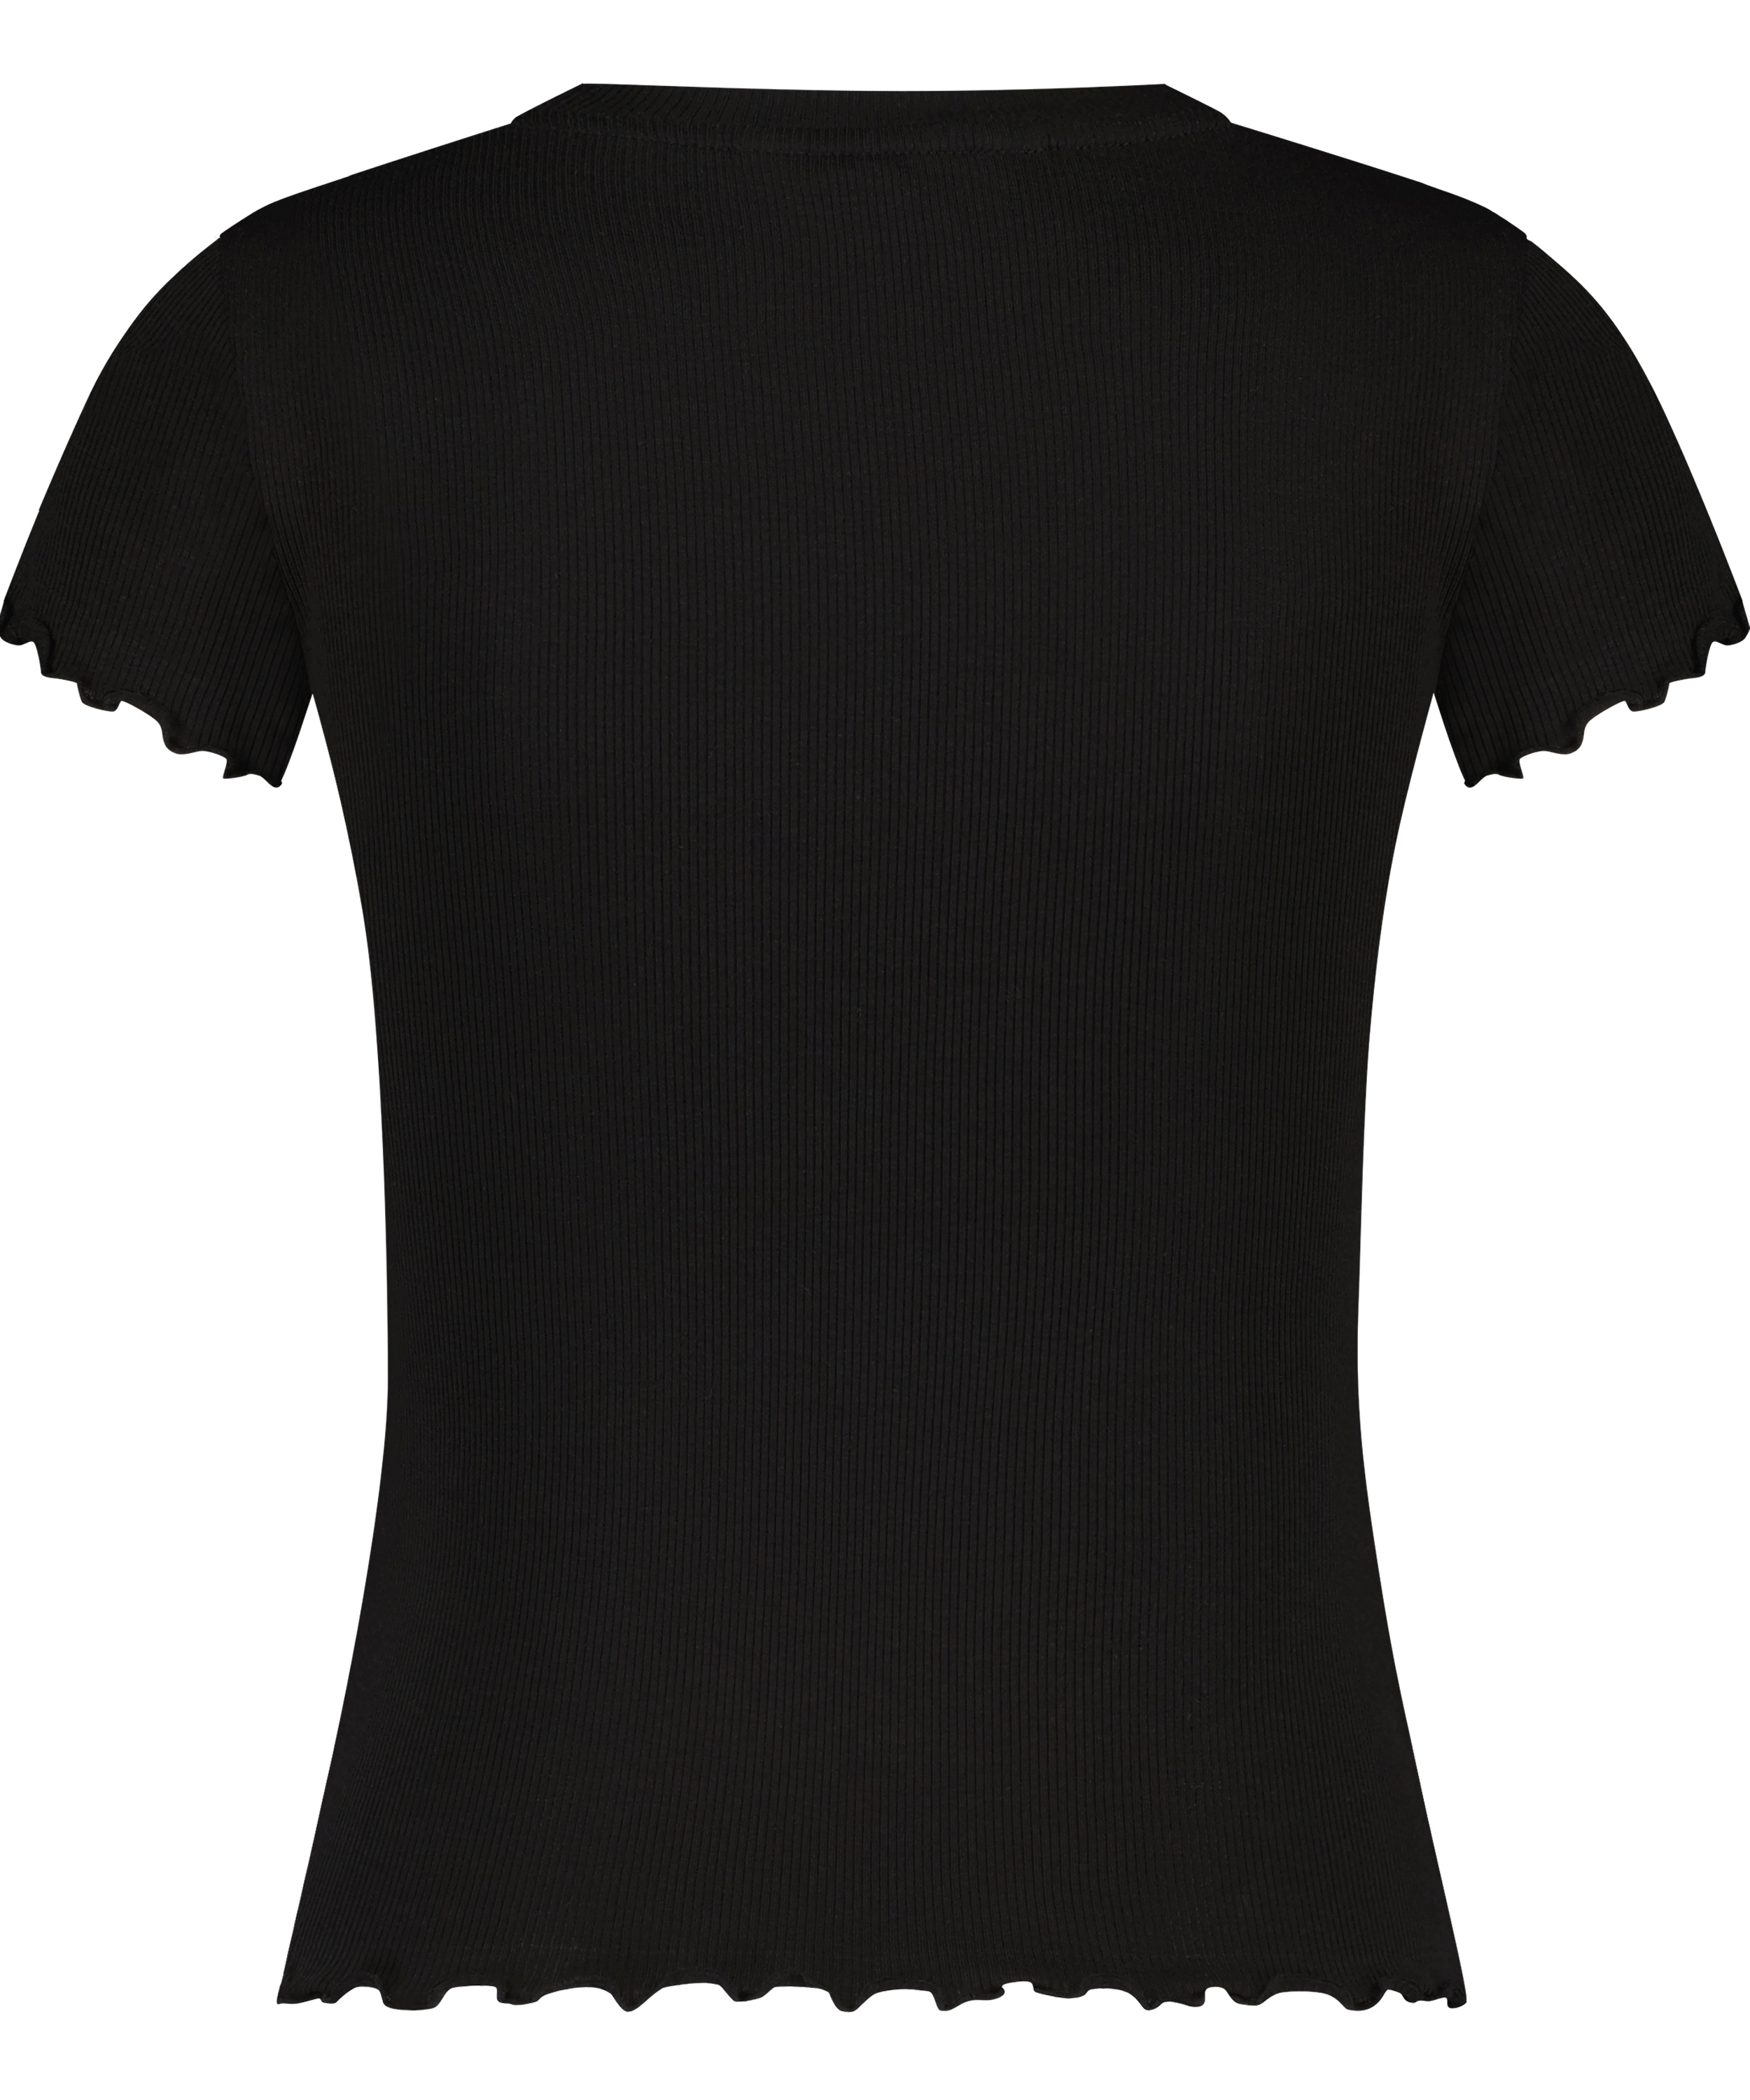 Rib shirt with short sleeves, Black, main